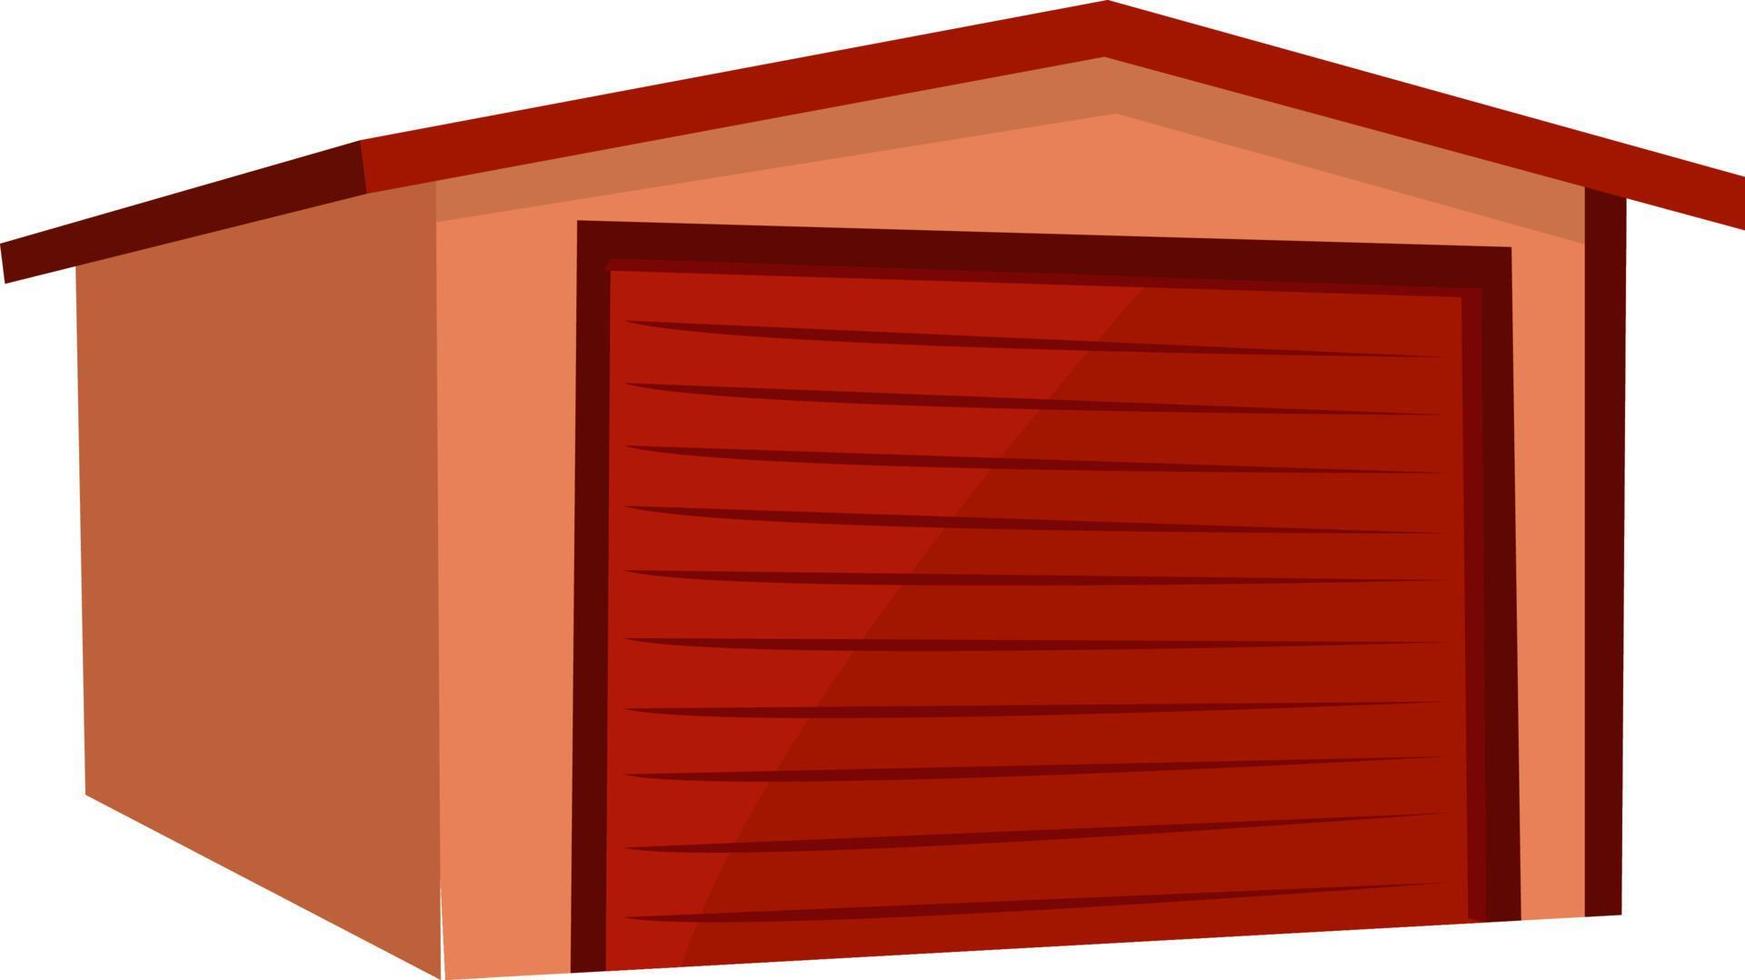 garagem vermelha, ilustração, vetor em fundo branco